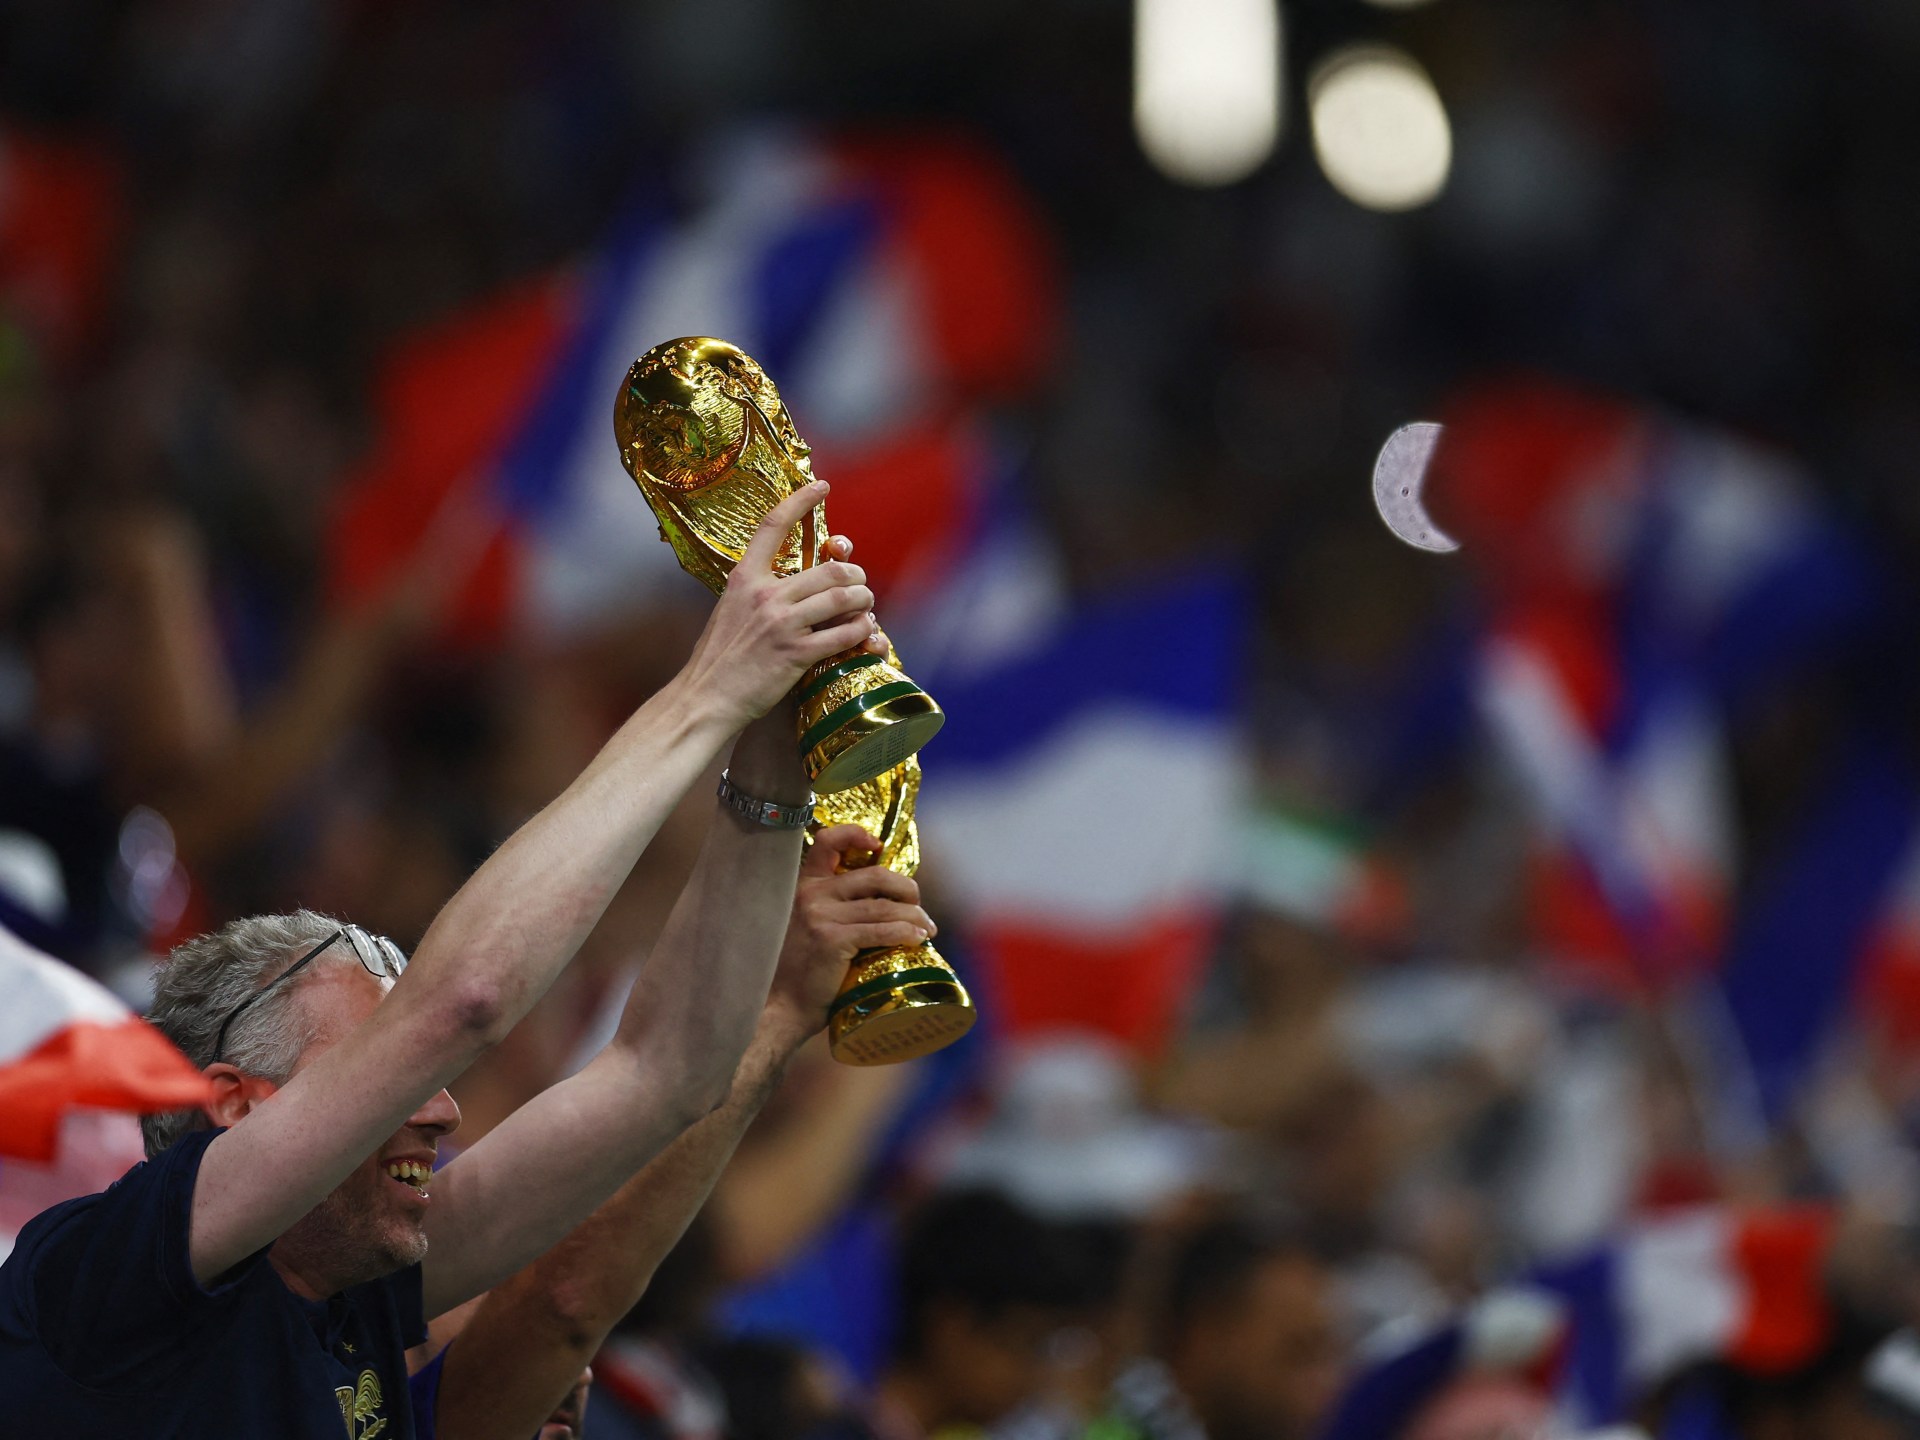 Président de la Fédération française de football : Les critiques du Qatar sont exagérées et la campagne de boycott a échoué (vidéo) |  nouvelles